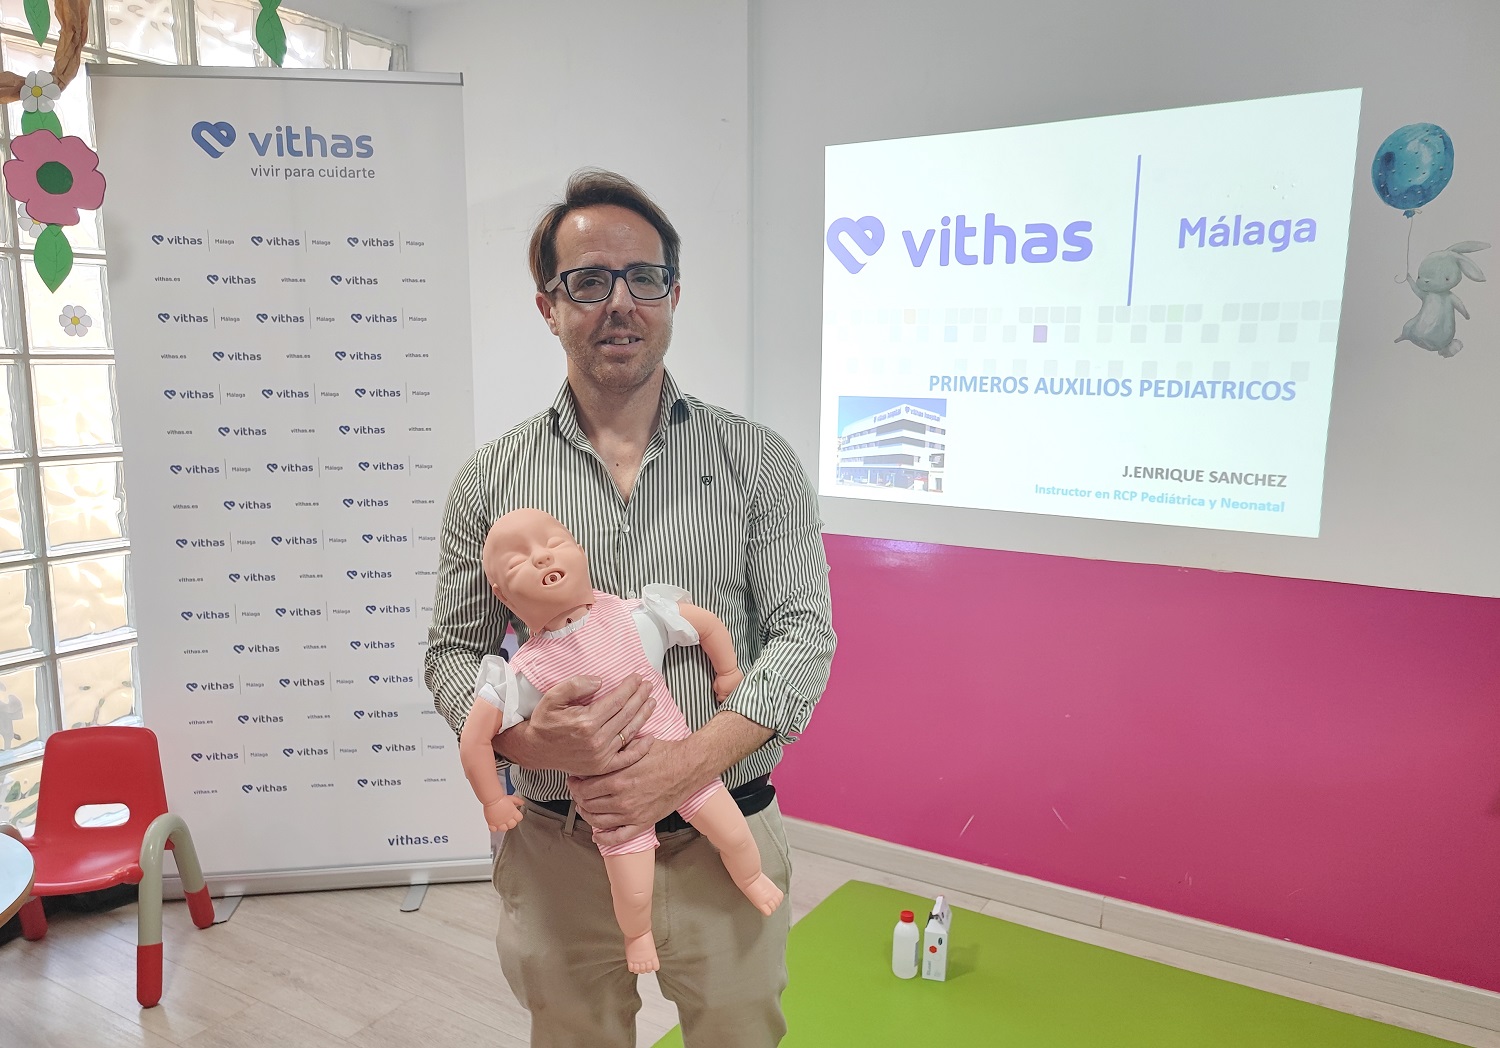 Vithas Málaga organiza un Aula Salud sobre primeros auxilios infantiles para familias